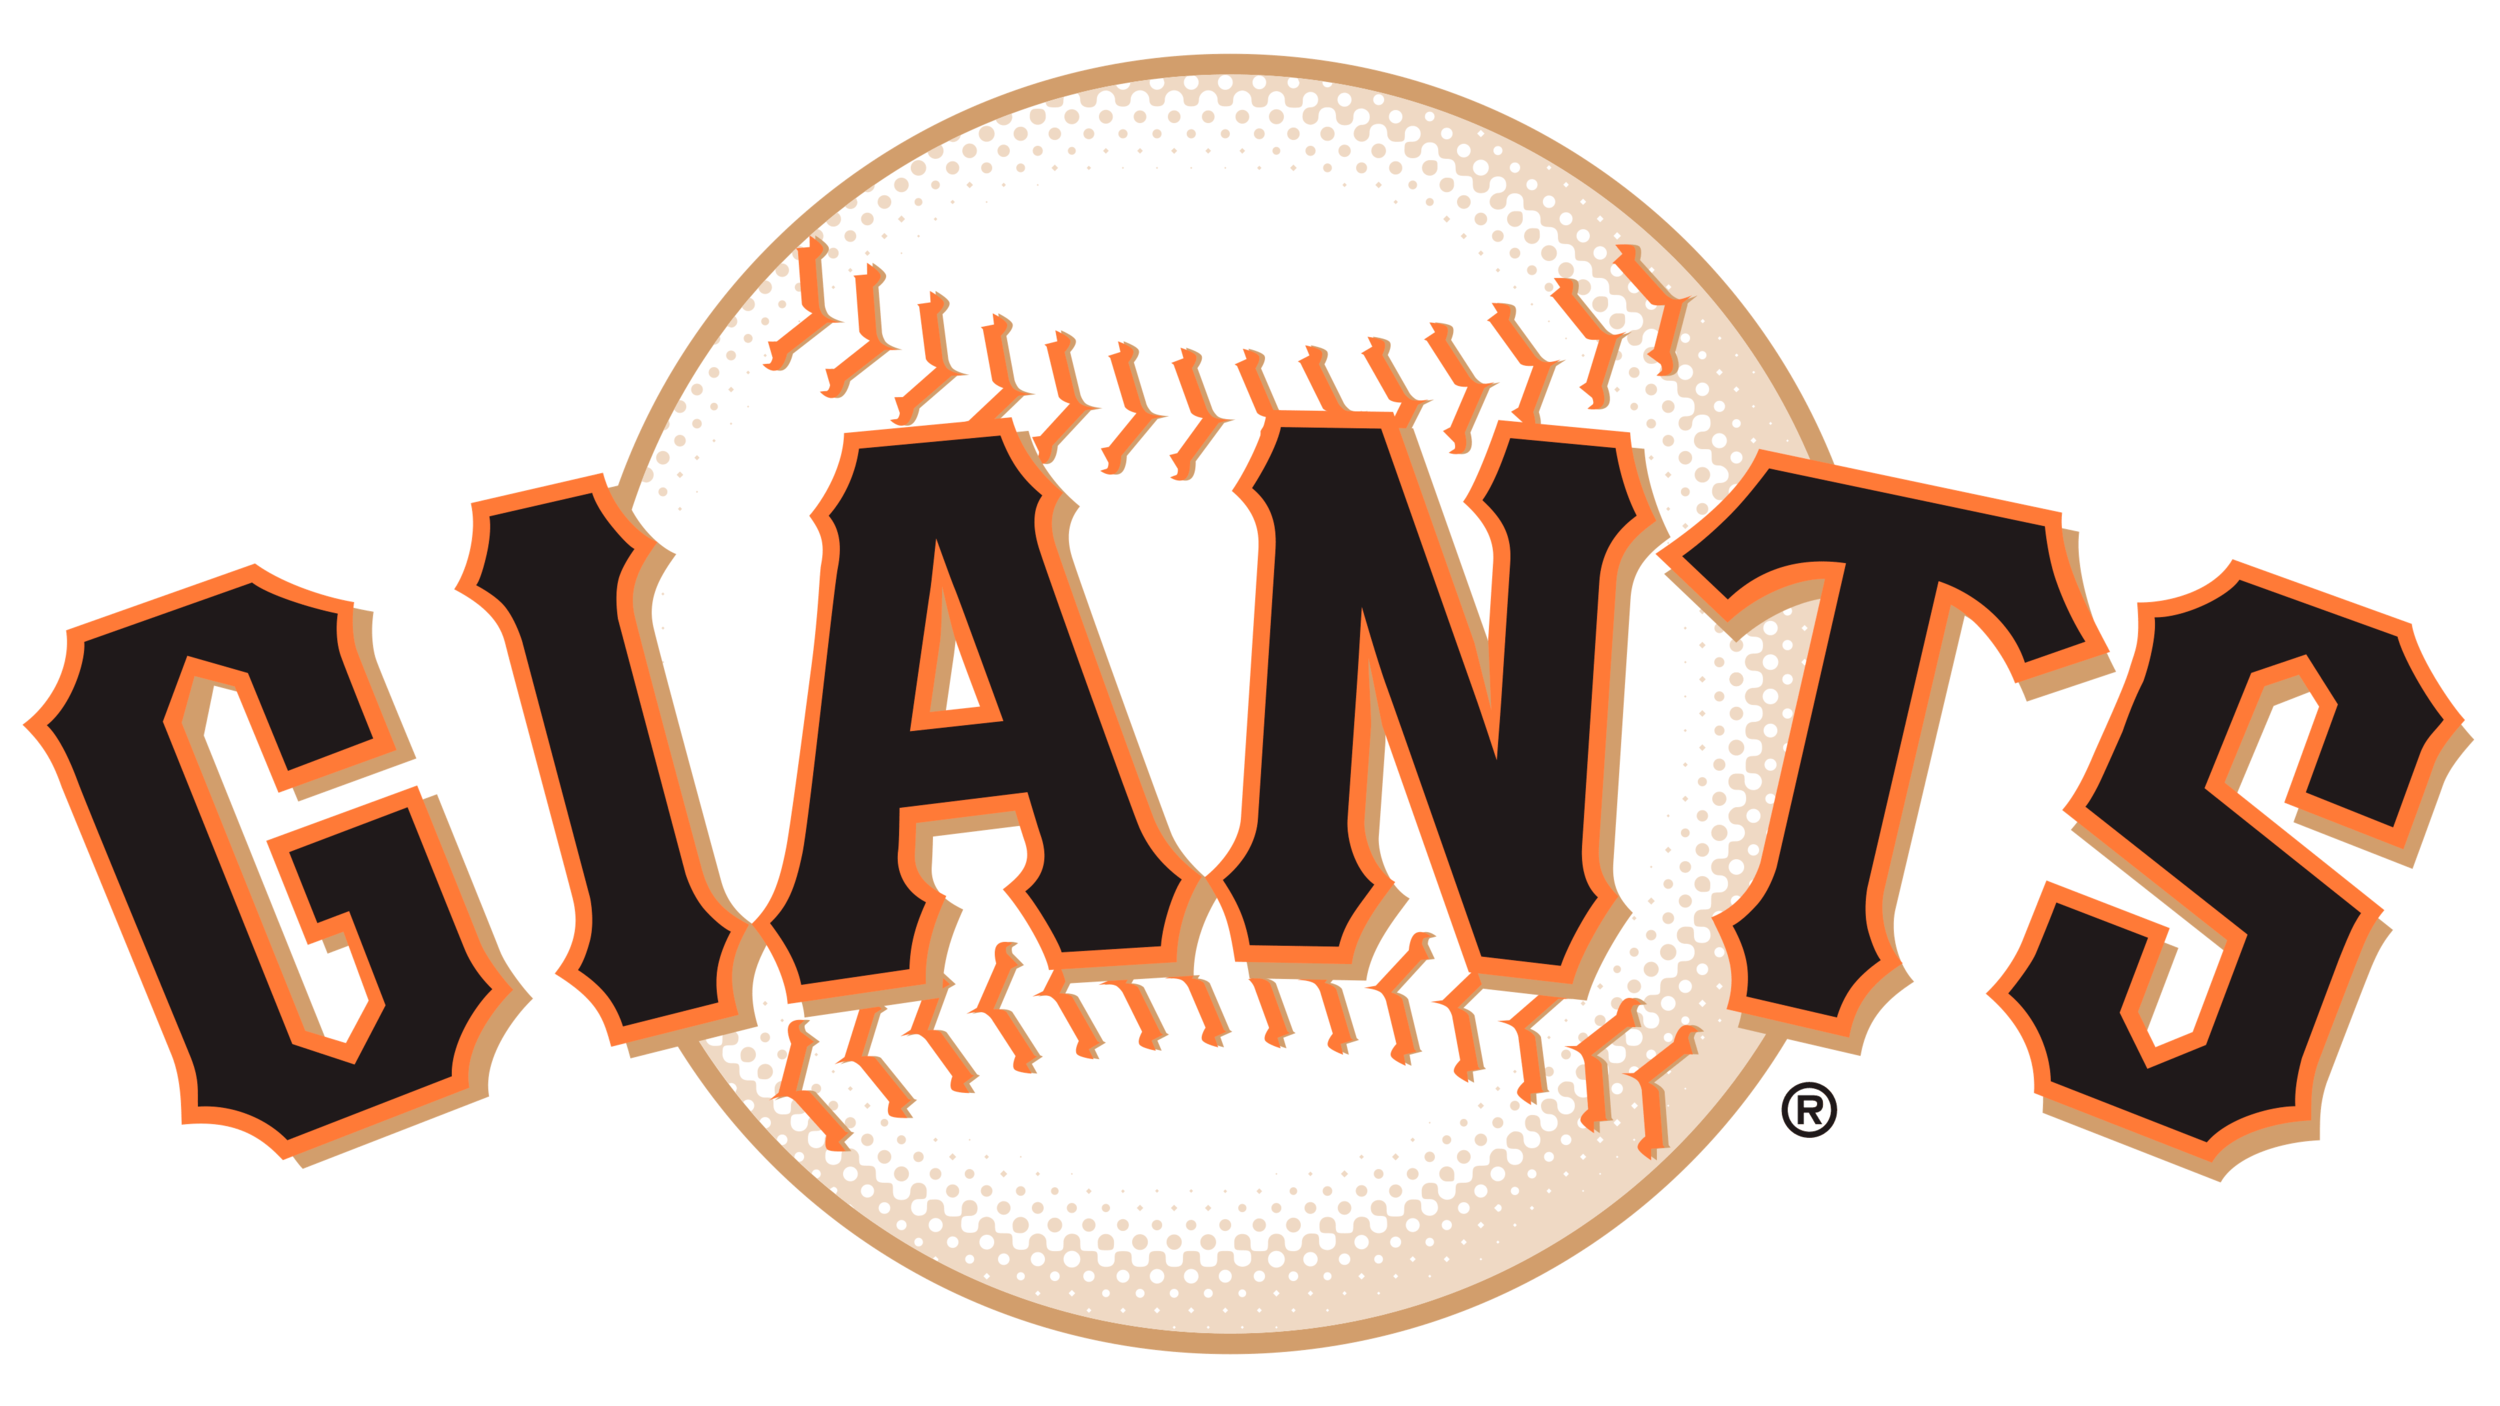 San-Francisco-Giants-logo.png